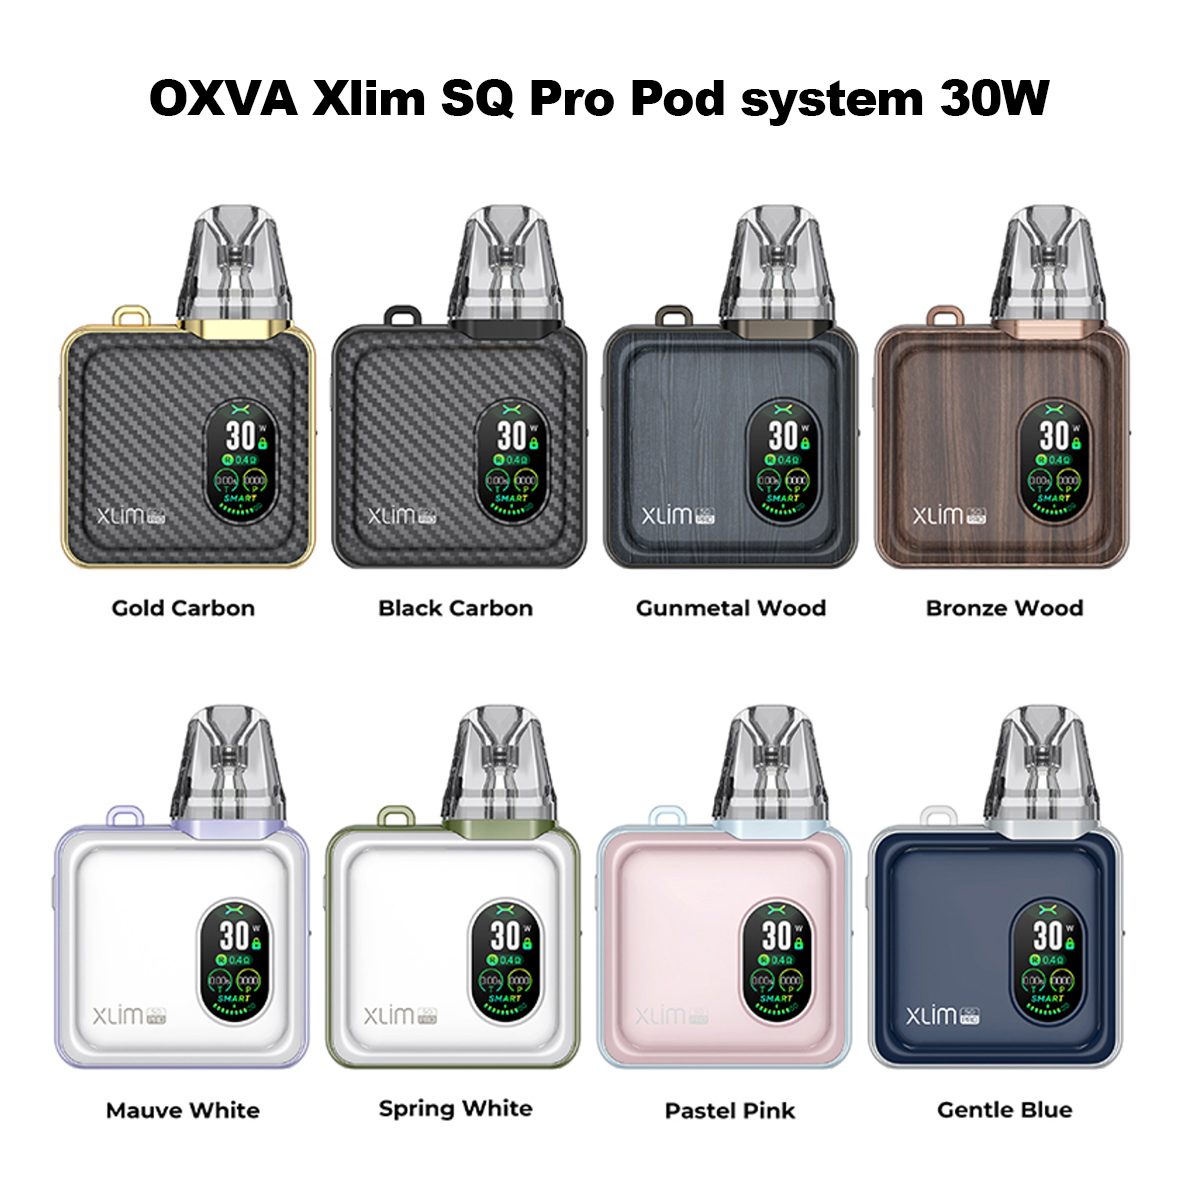 OXVA Xlim SQ Pro hot sale